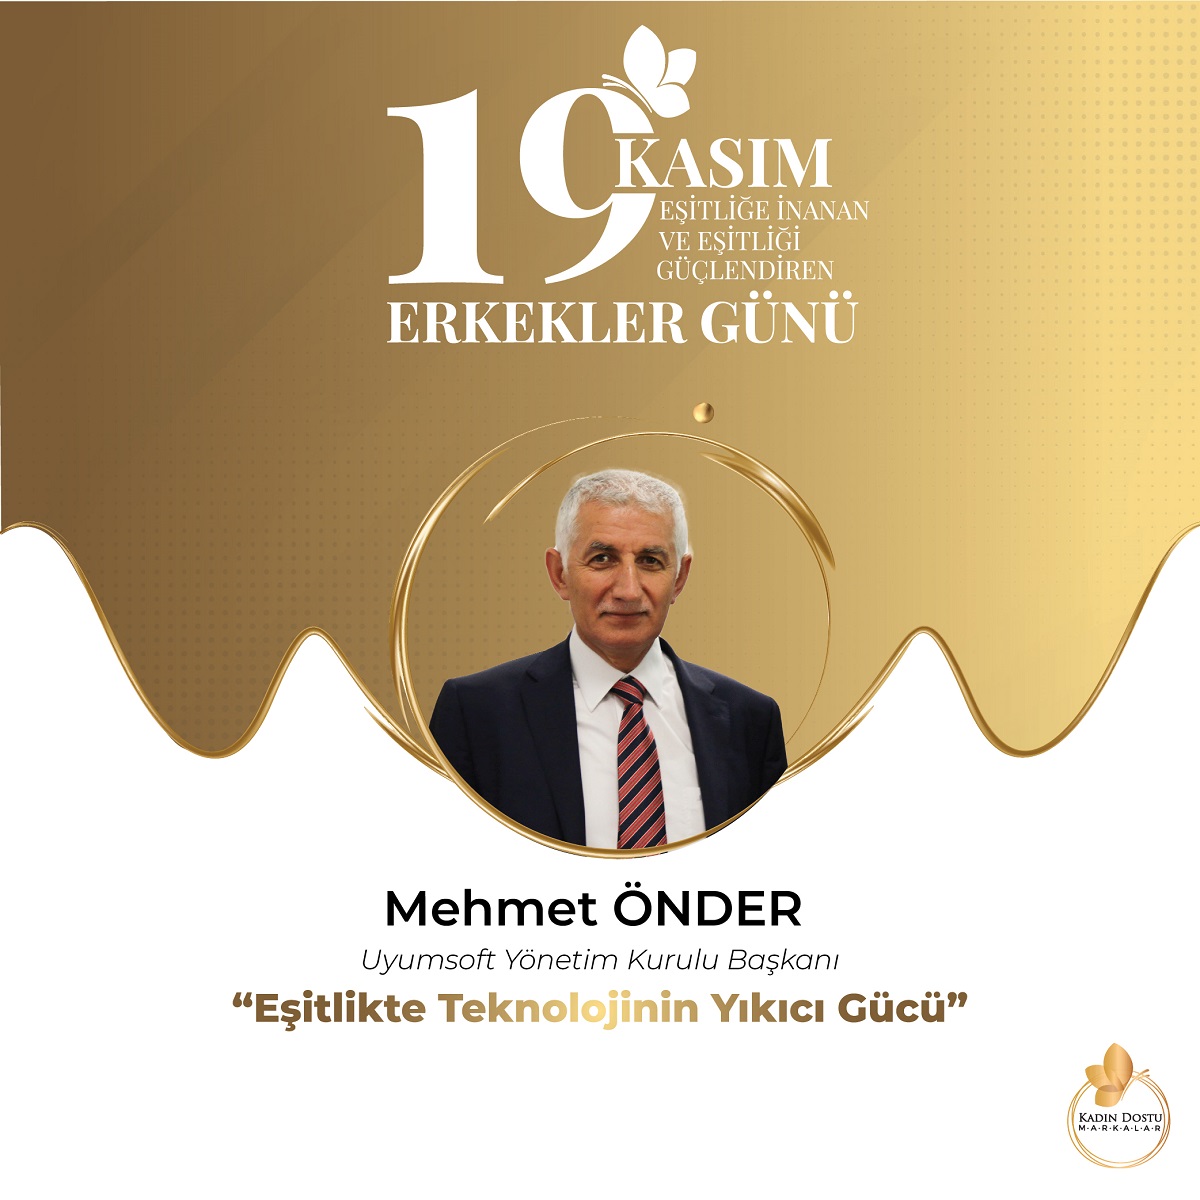 Uyumsoft Bilgi Sistemleri ve Teknolojileri A.Ş. Yönetim Kurulu Başkanı Mehmet ÖNDER